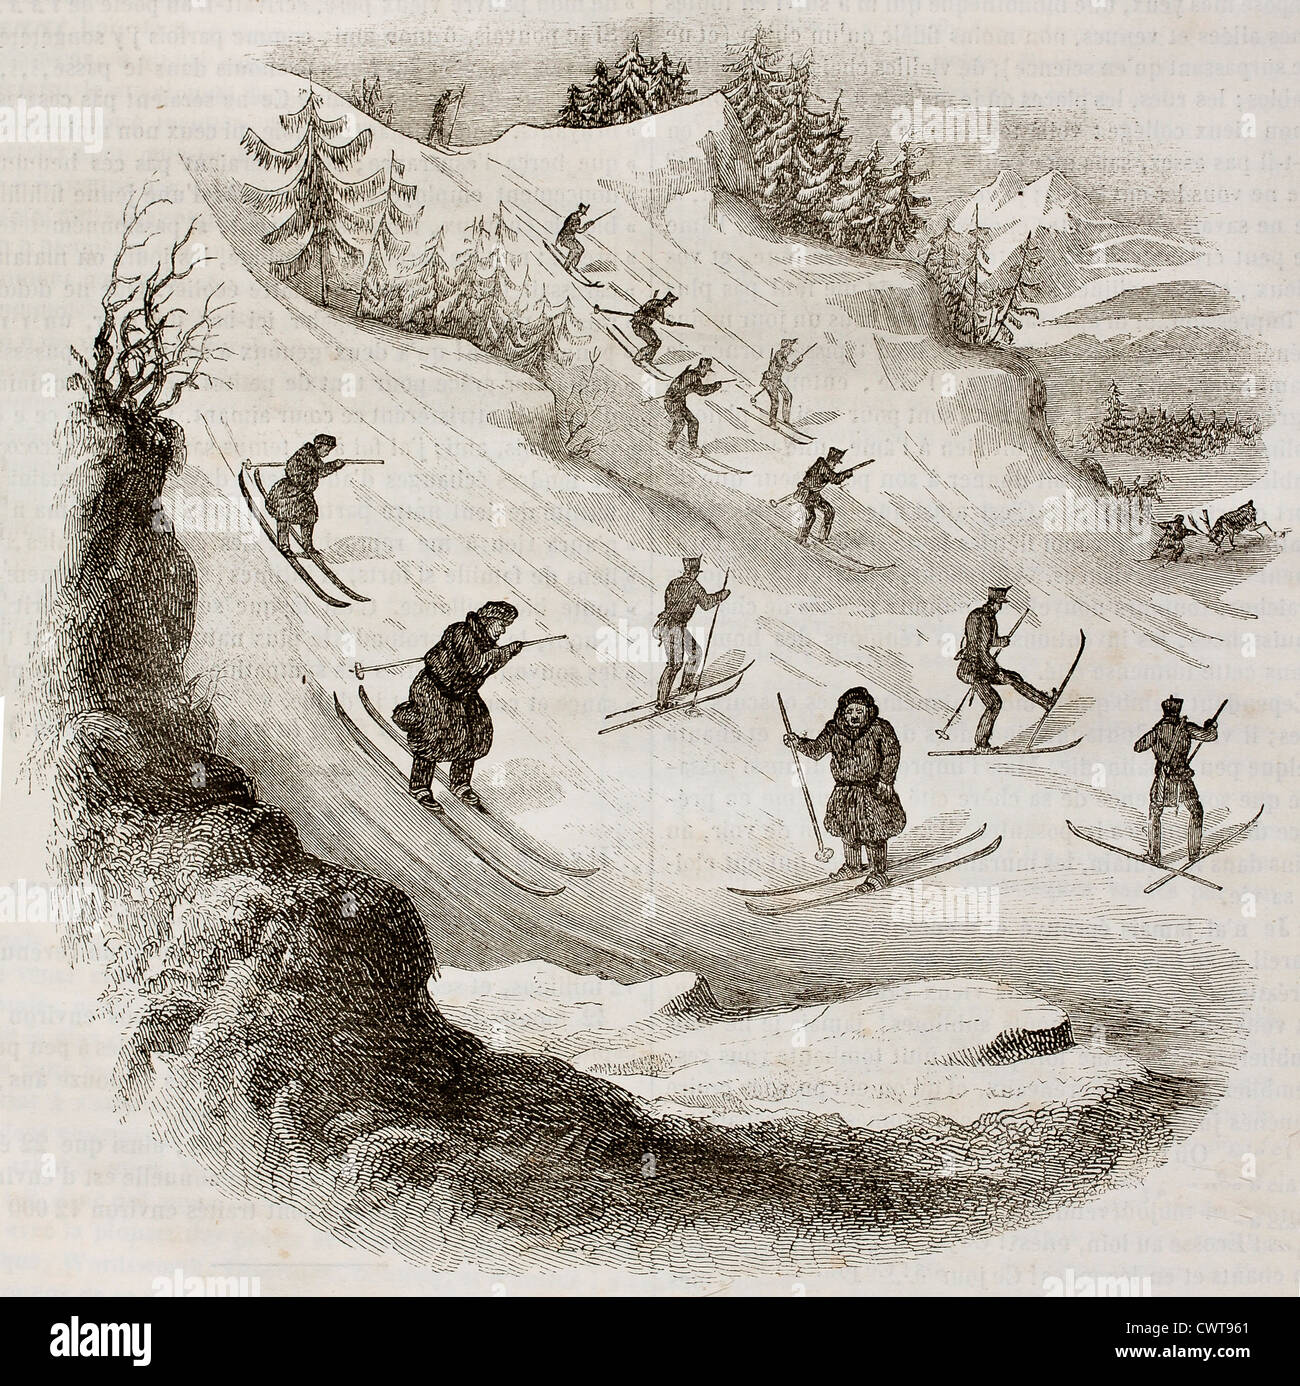 Les skieurs vieille illustration Banque D'Images